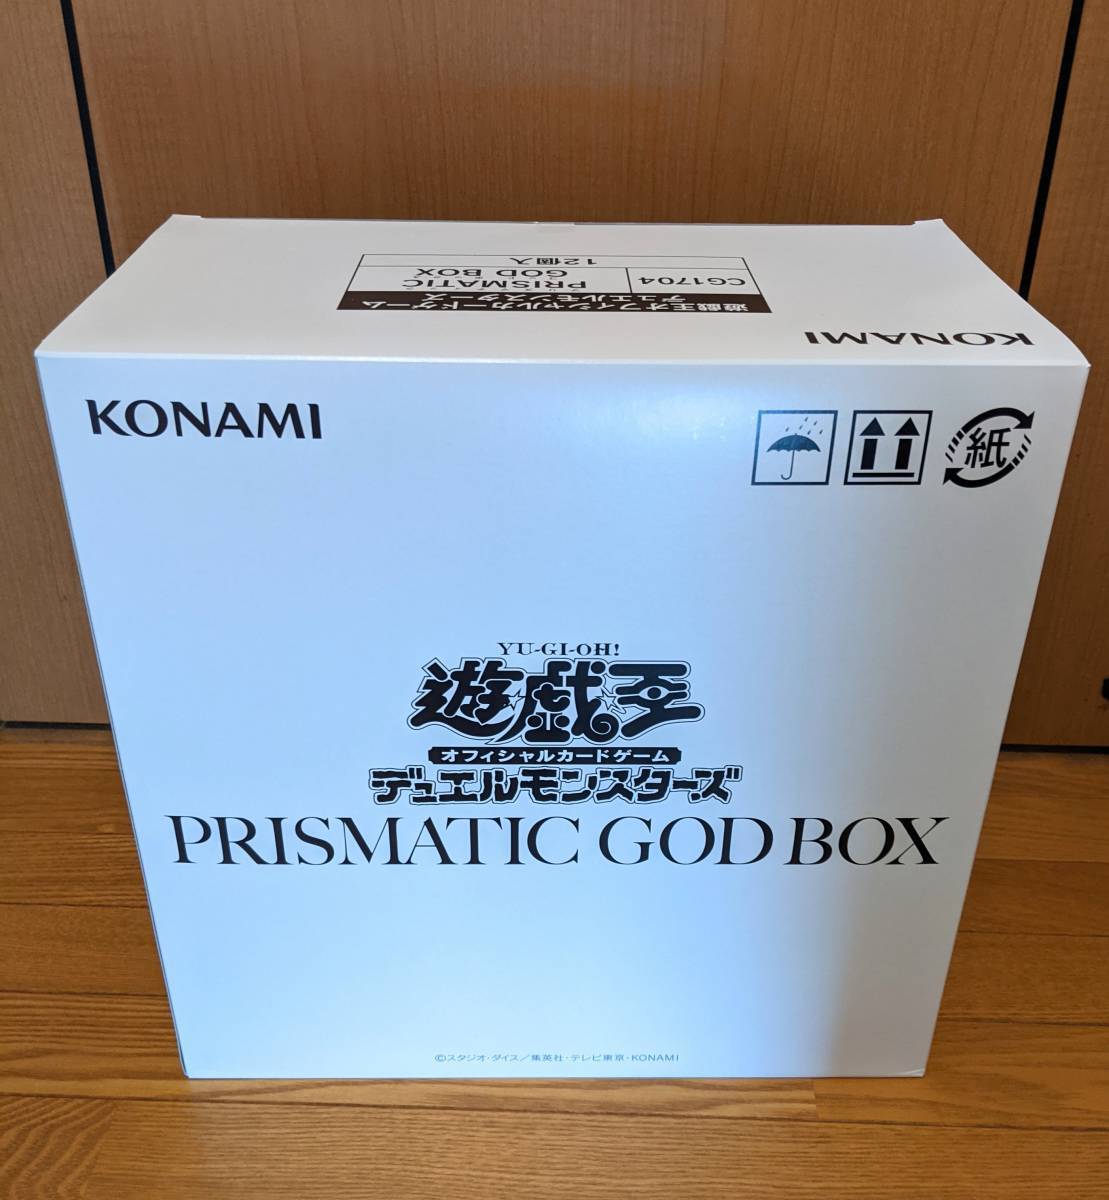 遊戯王 PRISMATIC GOD BOX (プリズマティックゴッドボックス) インナー